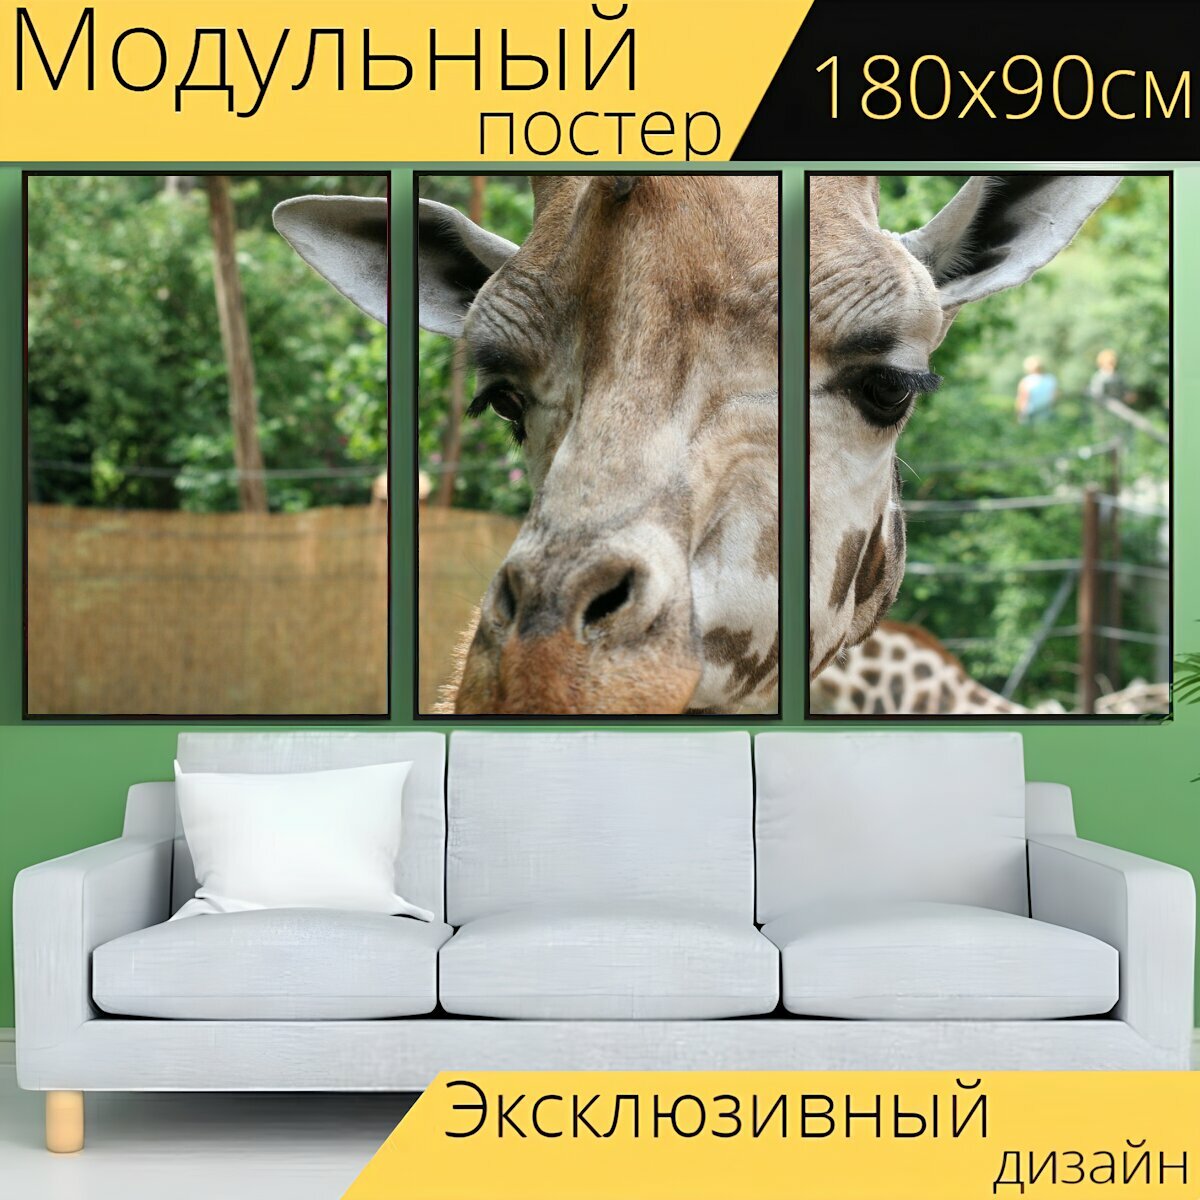 Модульный постер "Жирафа, голова, животное" 180 x 90 см. для интерьера